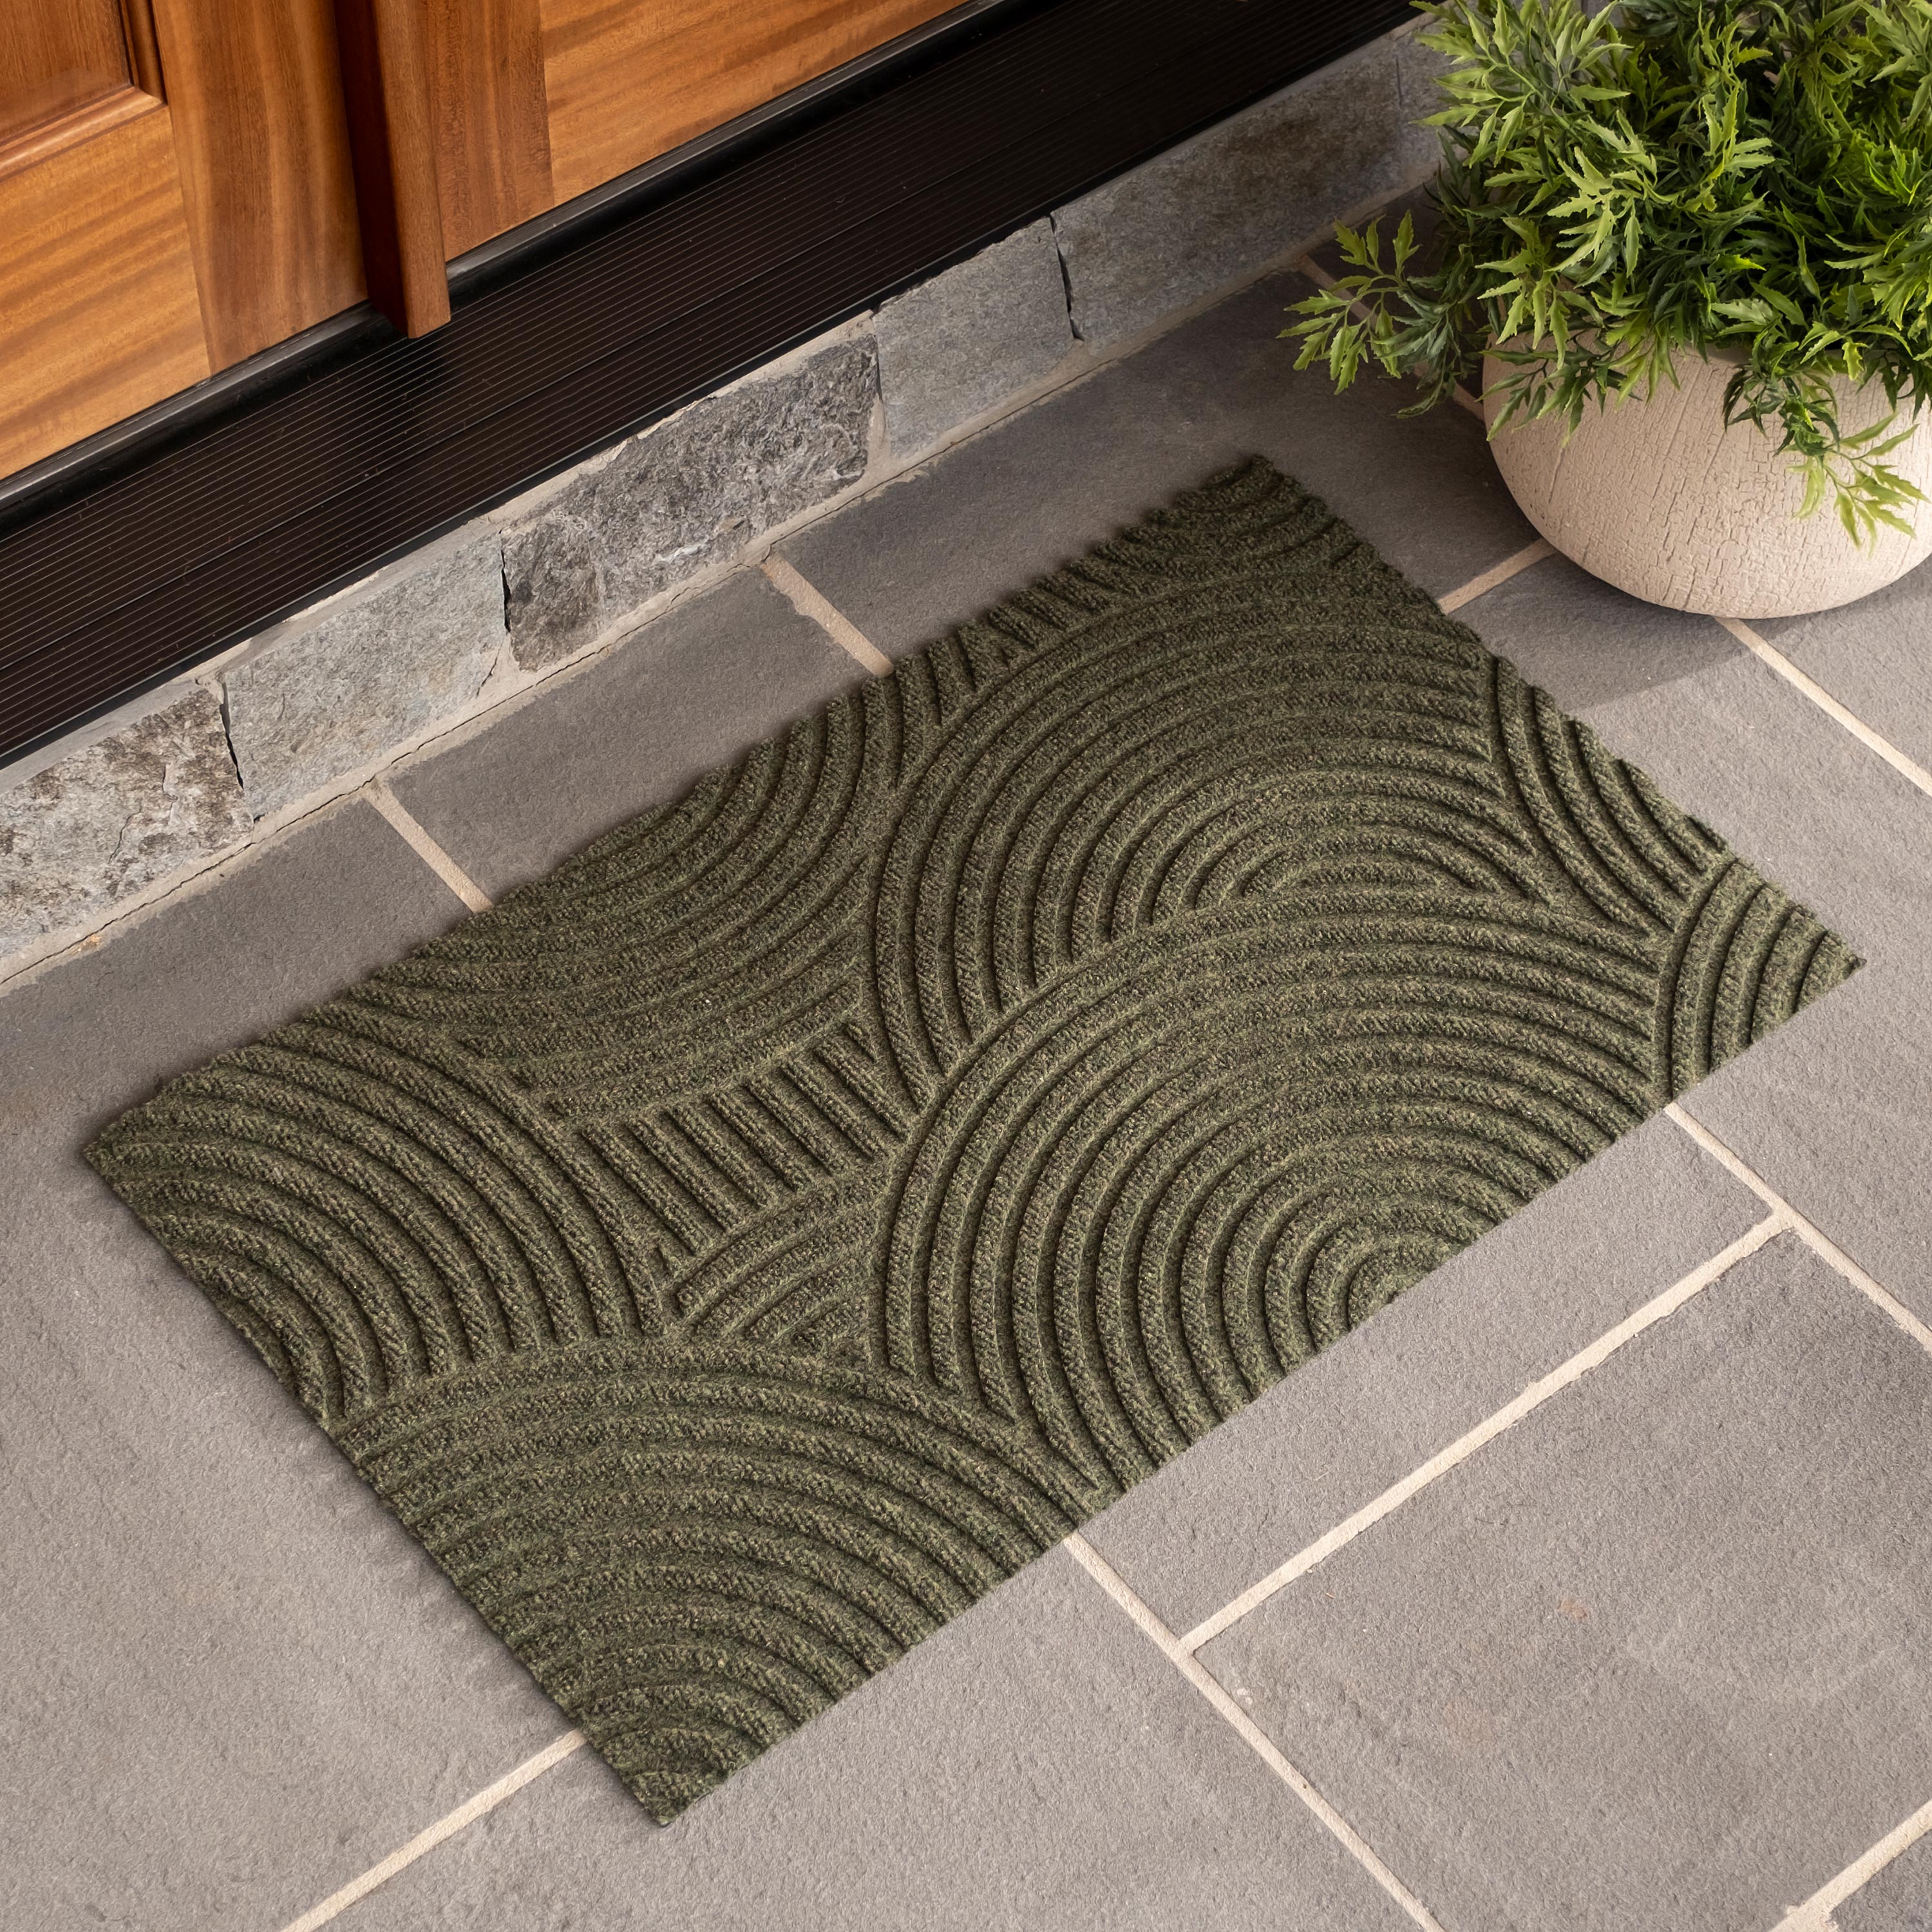 Waterhog Luxe Sand Doormat, 35"L x 21.5"W